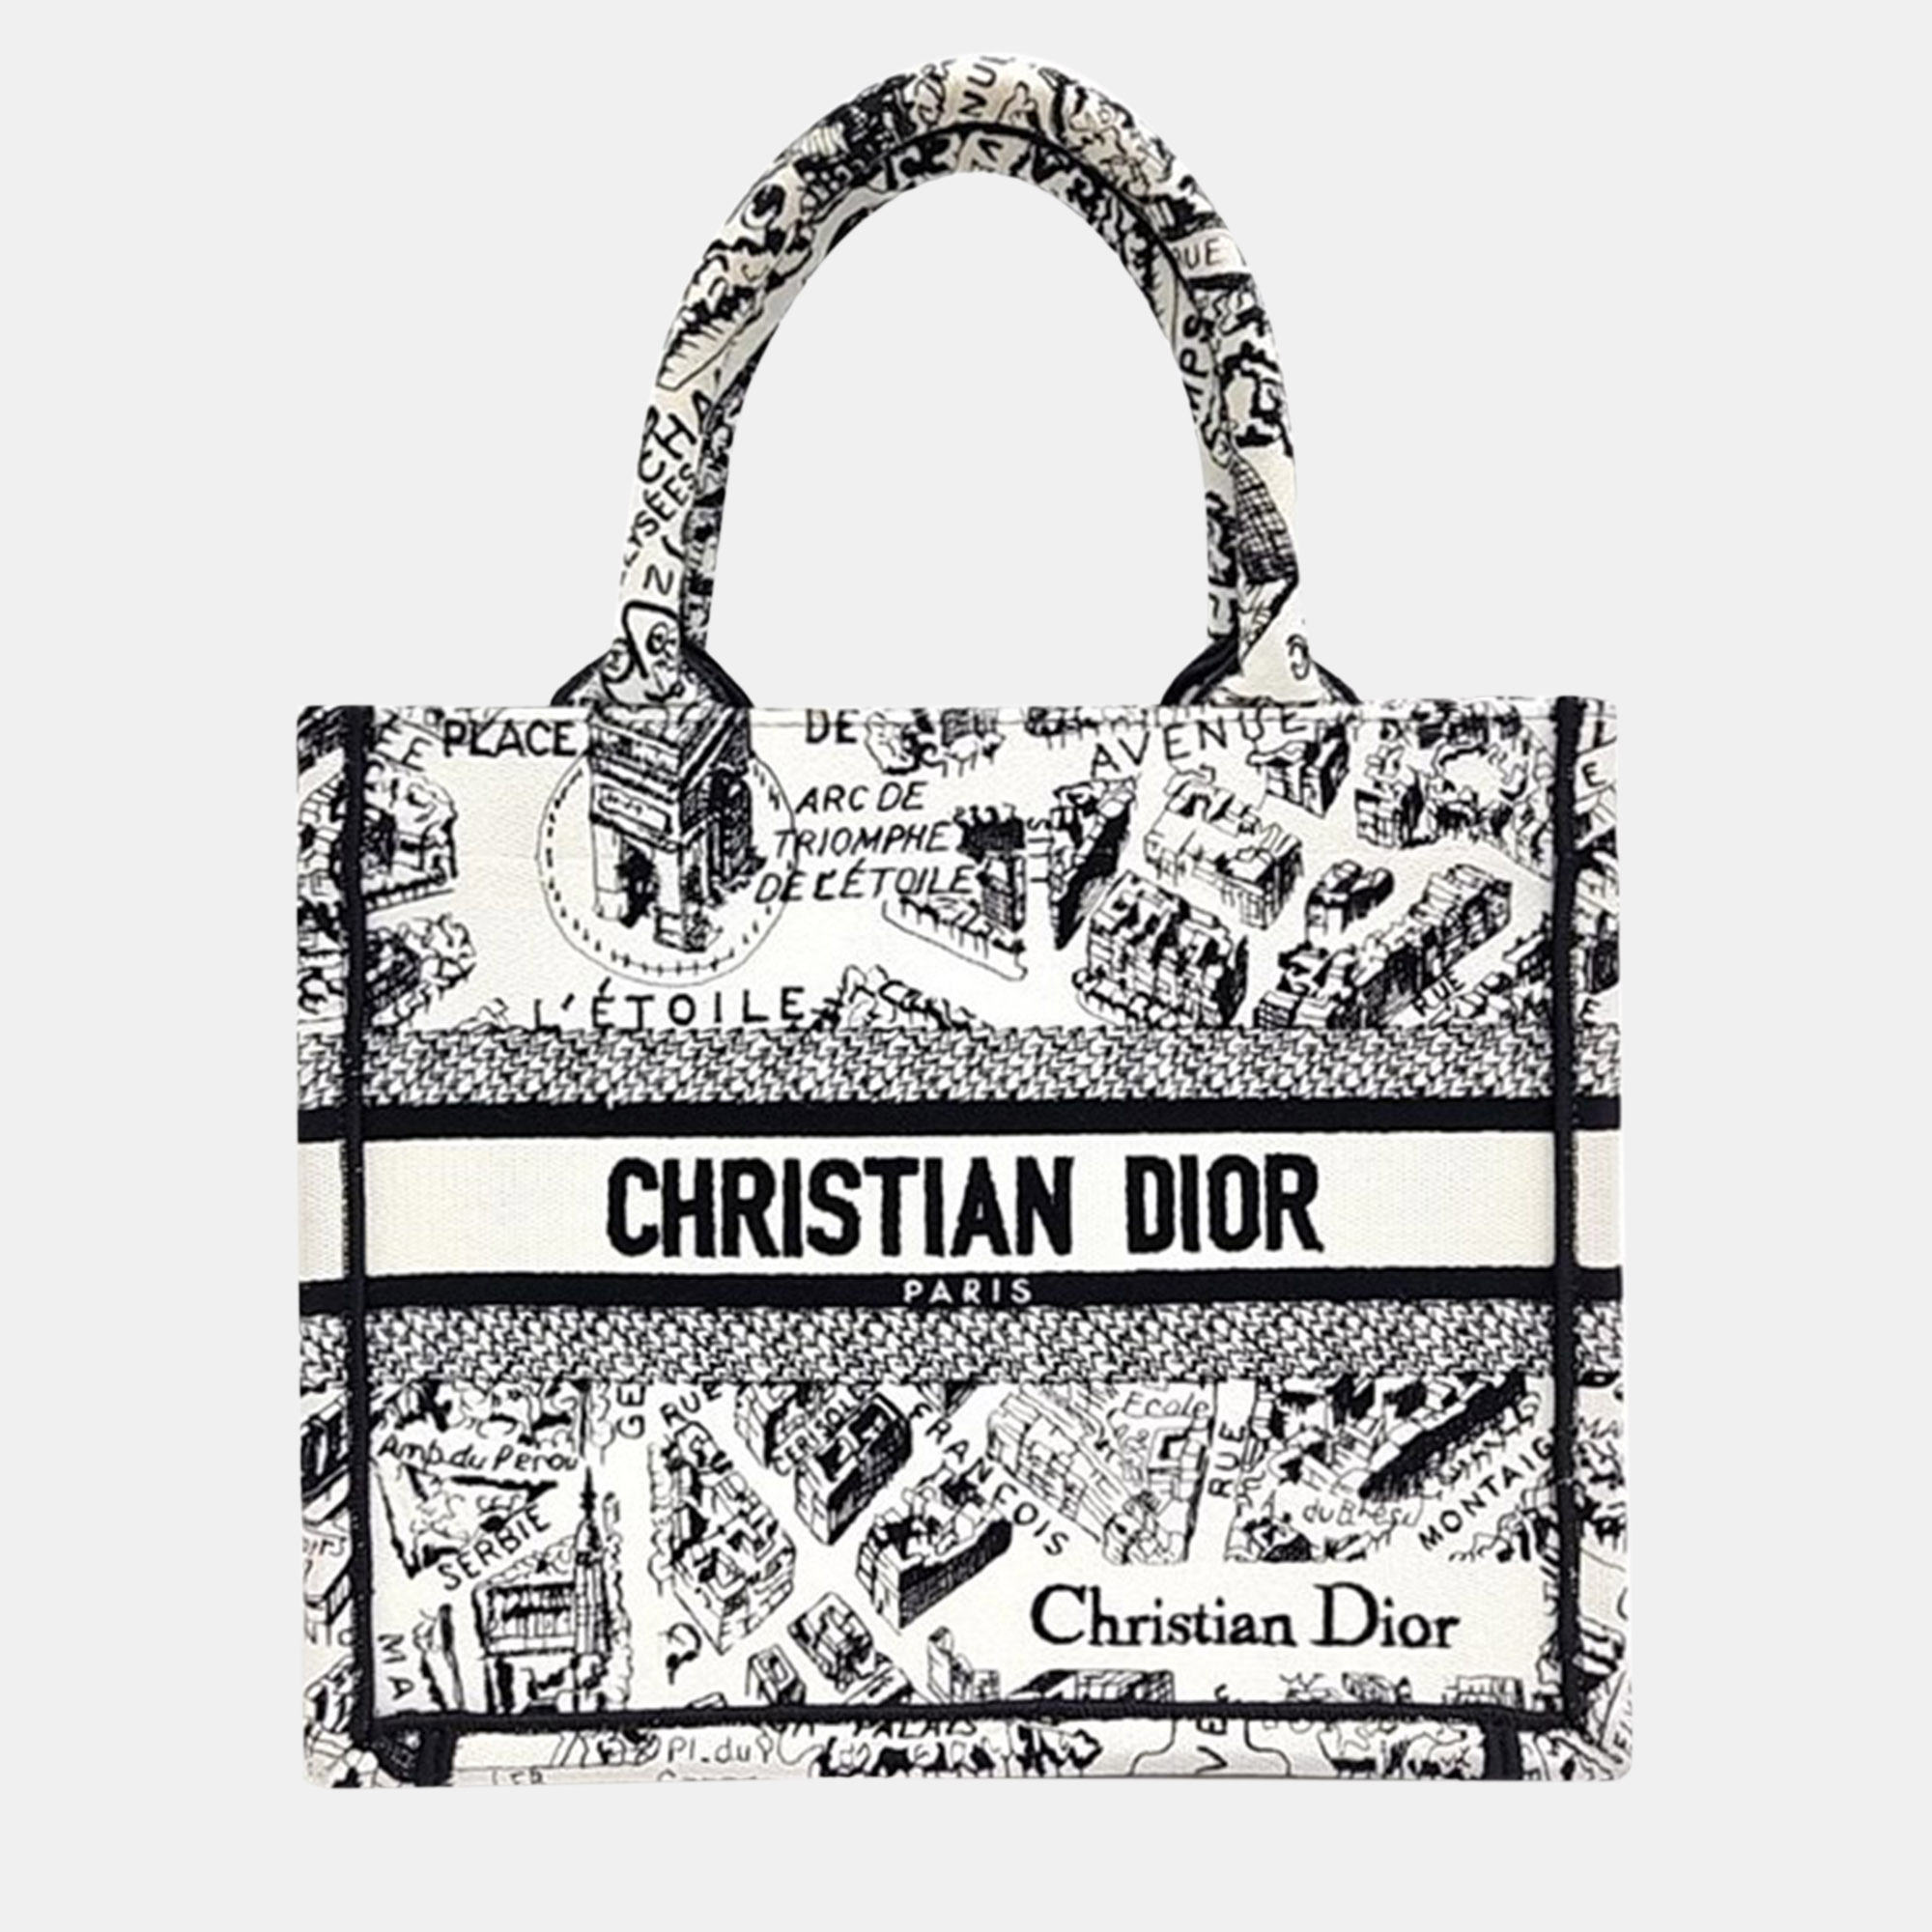 Christian dior book tote bag 26 m1265